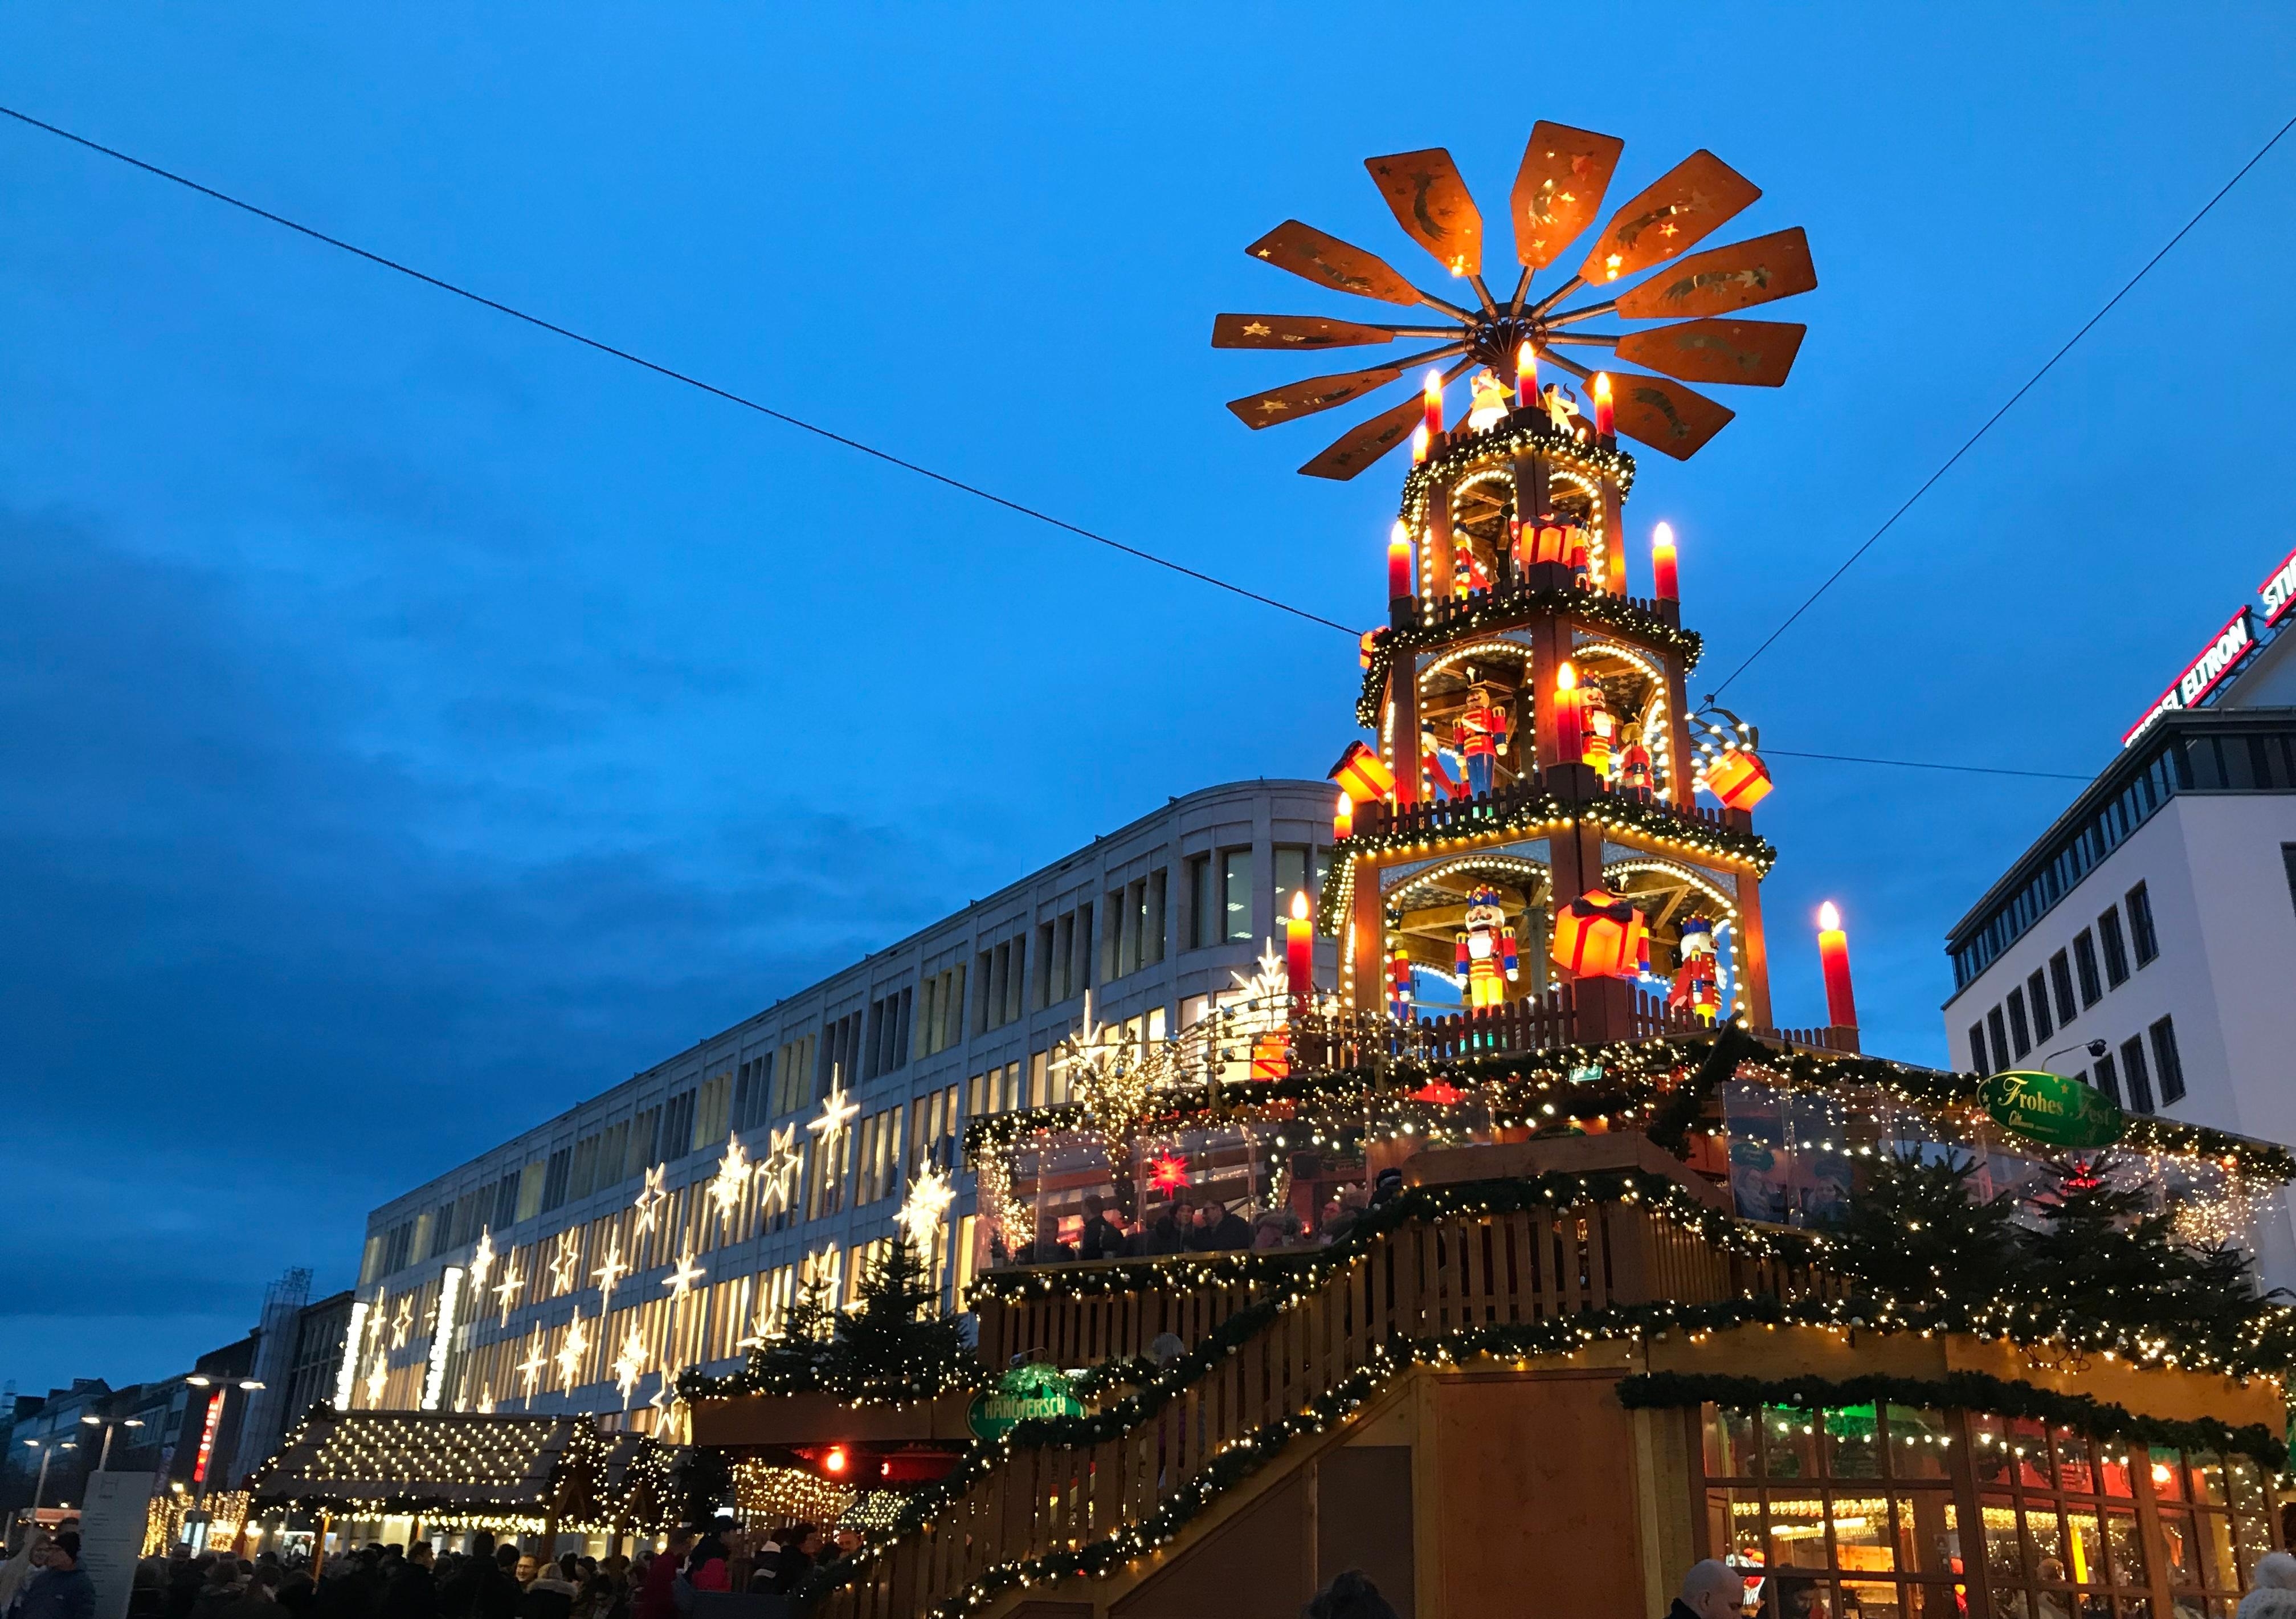 Das ist die 18 Meter hohe Weihnachtspyramide in Hannover ⭐️
#Weihnachten #Hannover